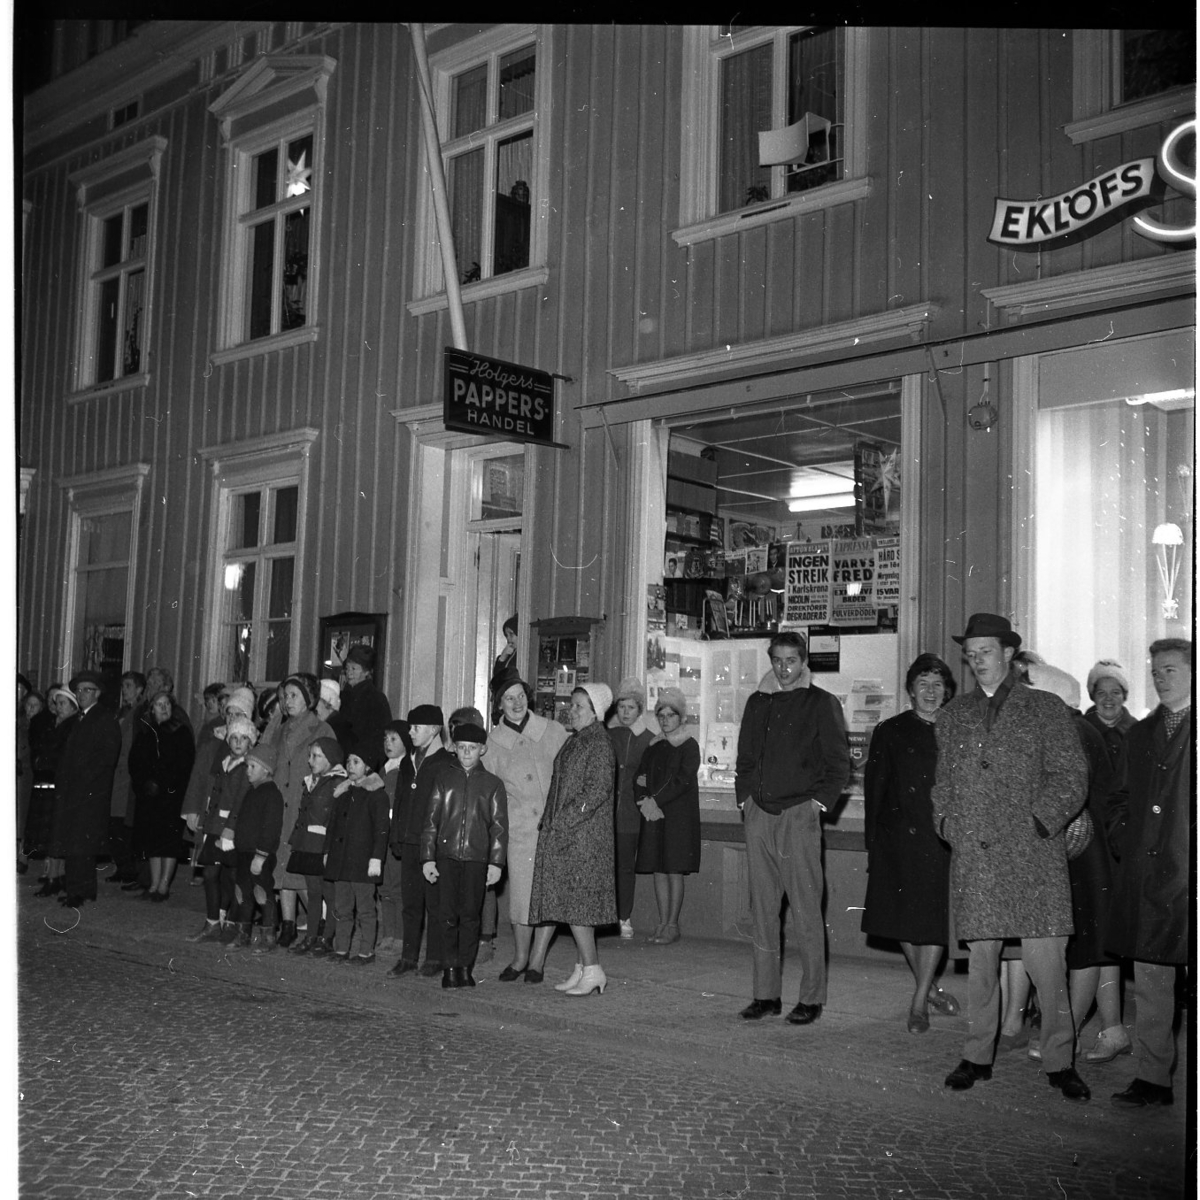 Grännabor, barn och vuxna, står utmed Brahegatan och väntar på Gränna scoutkårs lucia. Fasadskyltar för "Holgers Pappershandel" och "Eklöfs skor".